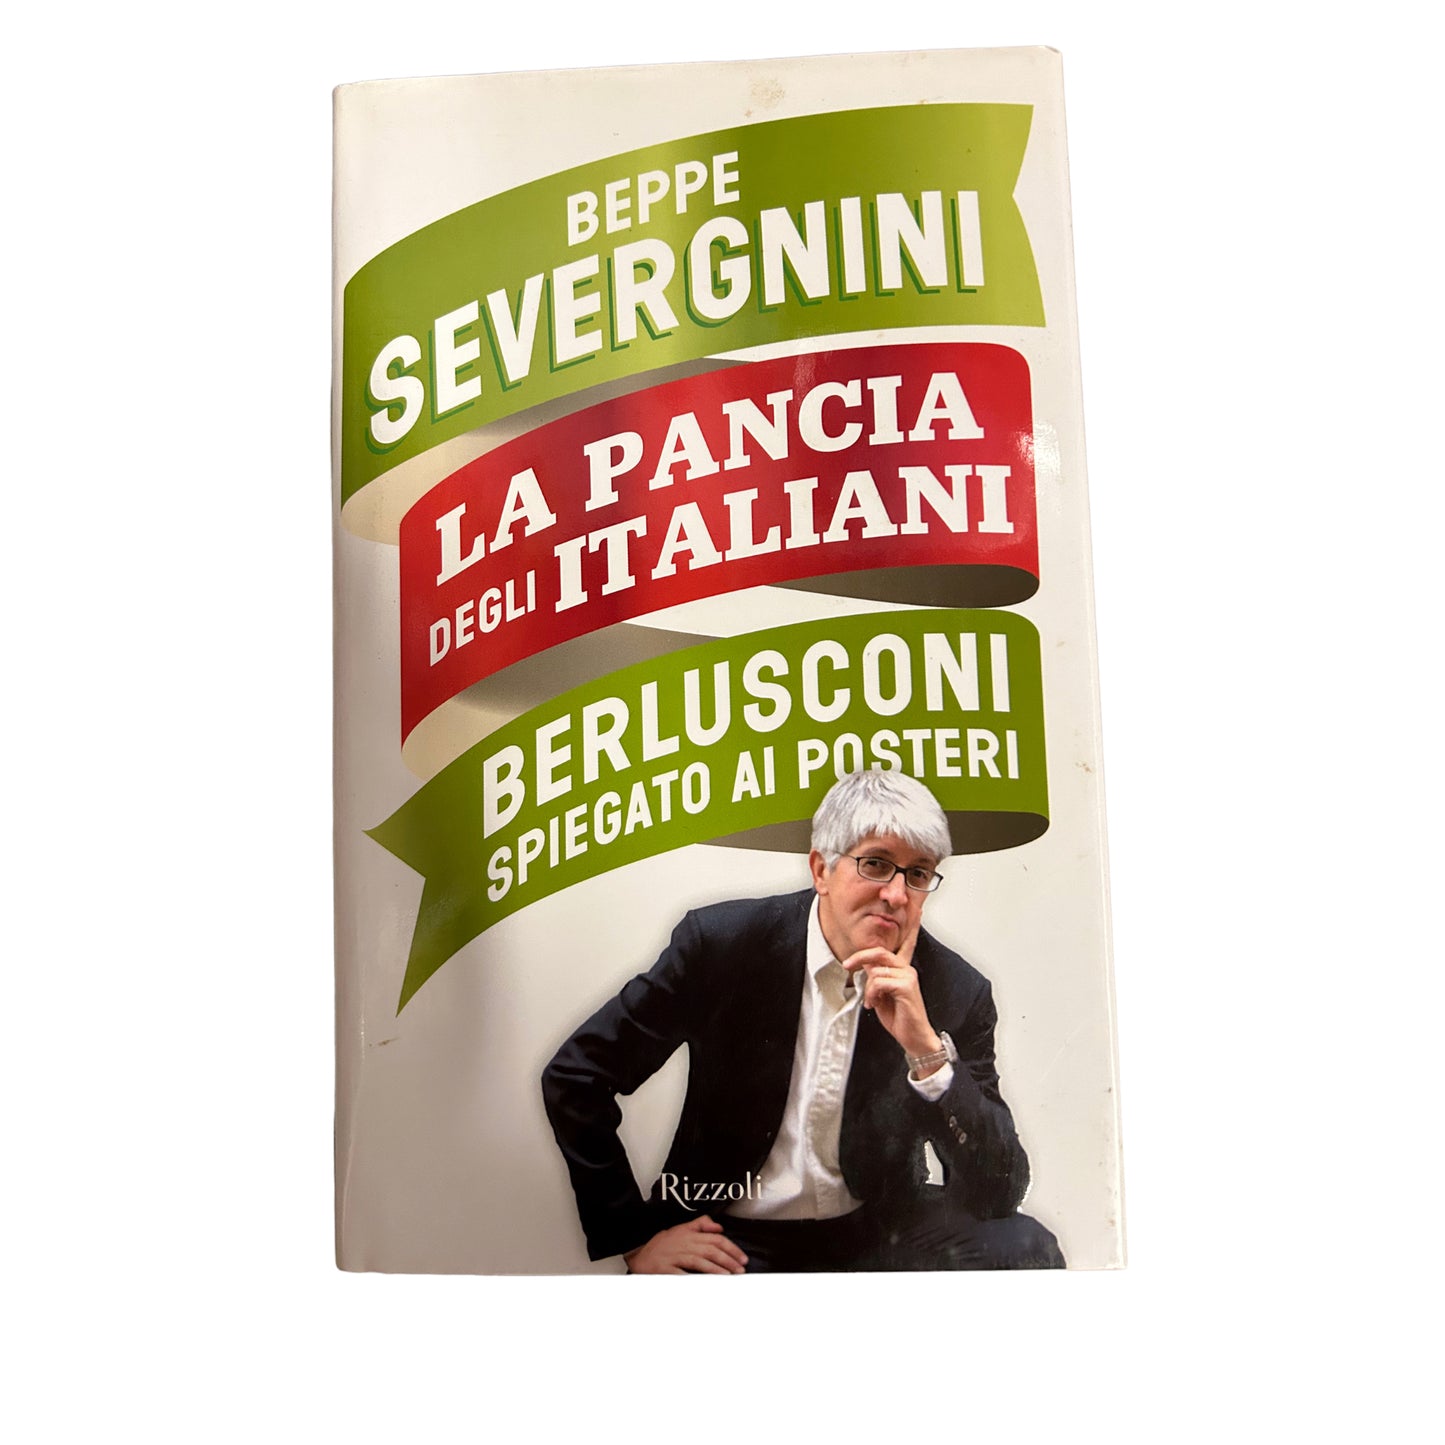 La pancia degli italiani. Berlusconi spiegato ai posteri - Beppe Severgnini